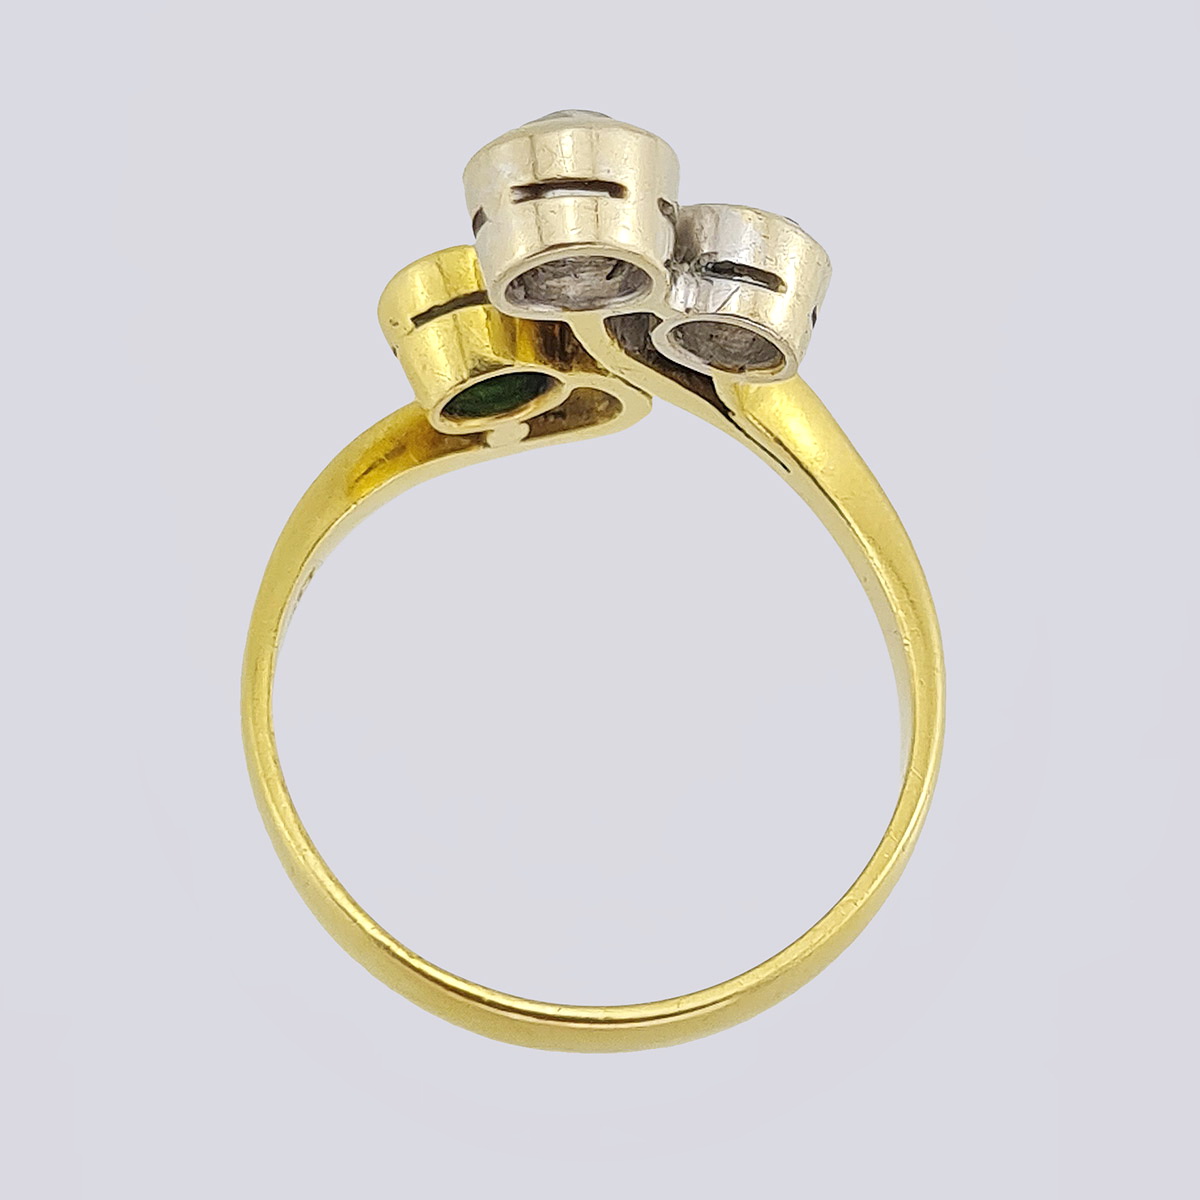 Кольцо из золота 750 пробы с бриллиантами старой огранки и природным изумрудом (Италия, 17 размер)